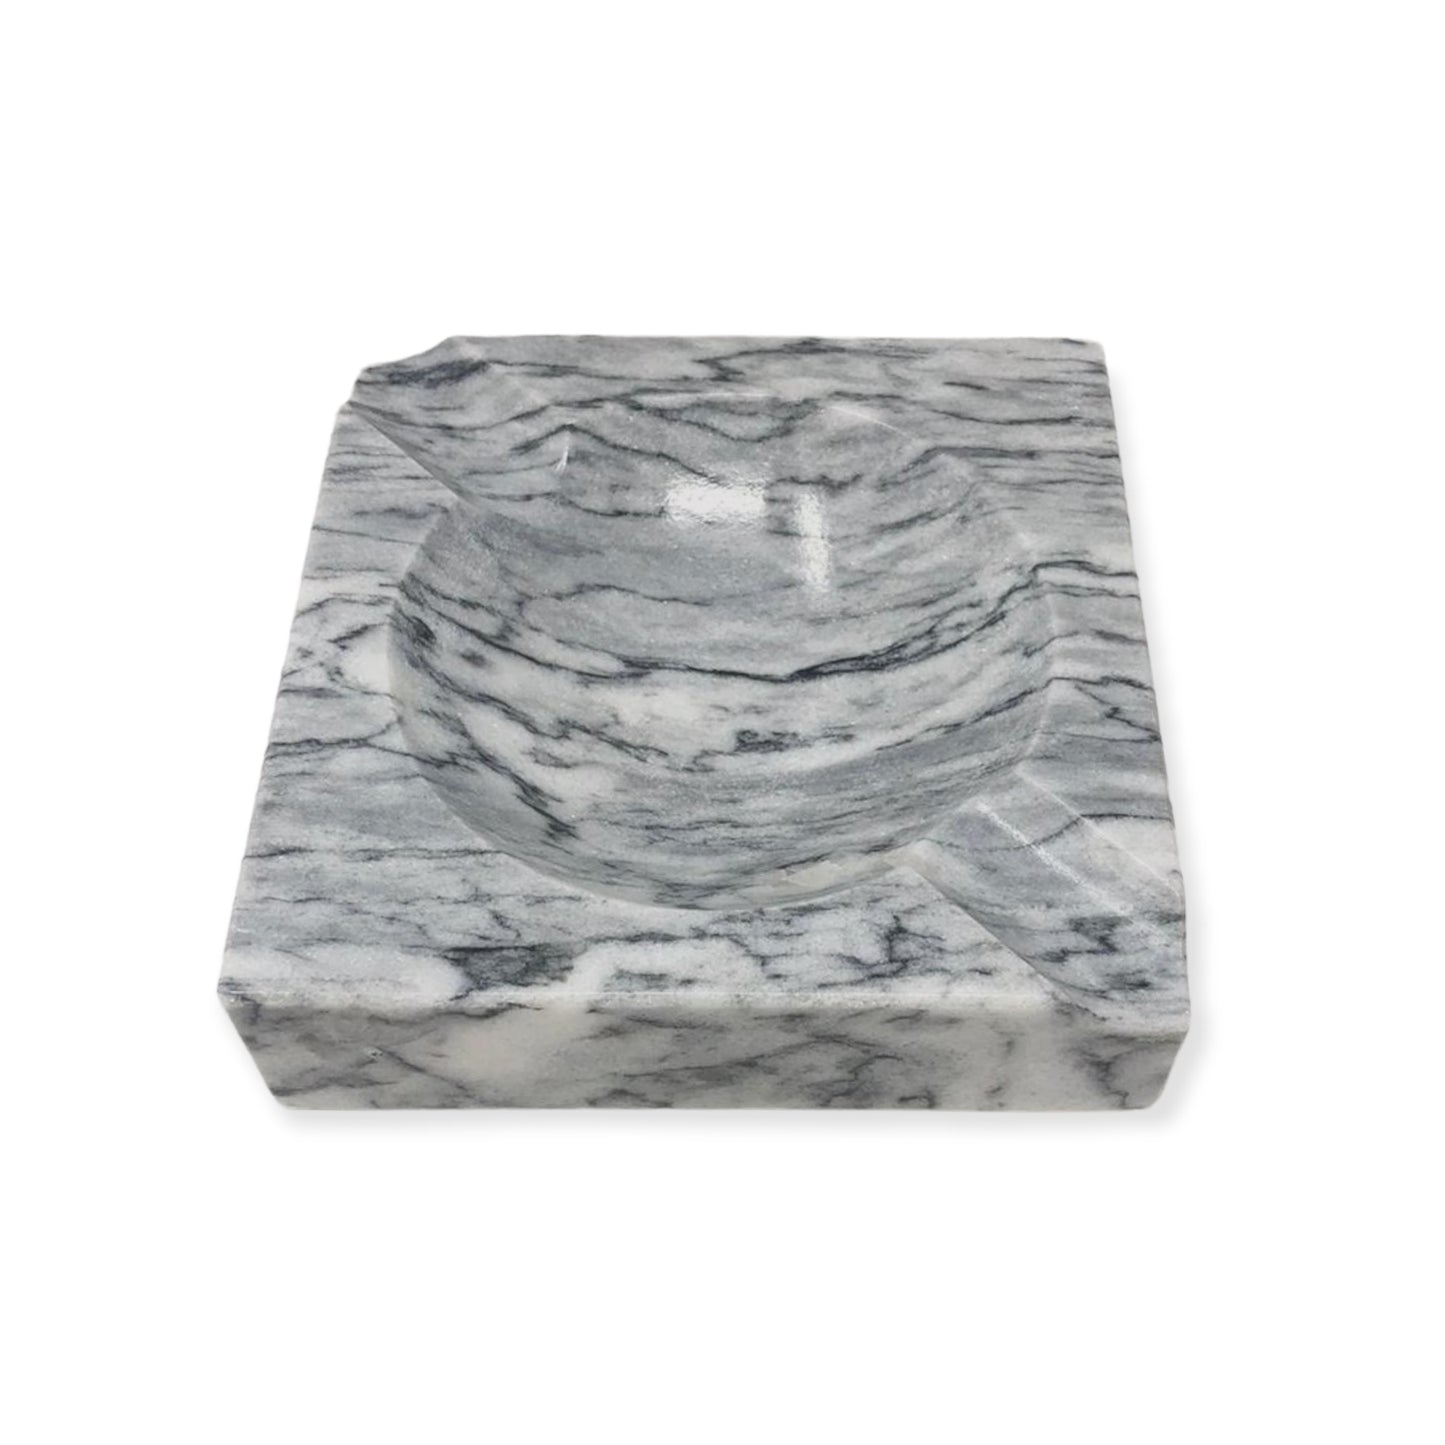 Ashtray - Grey Marble Small